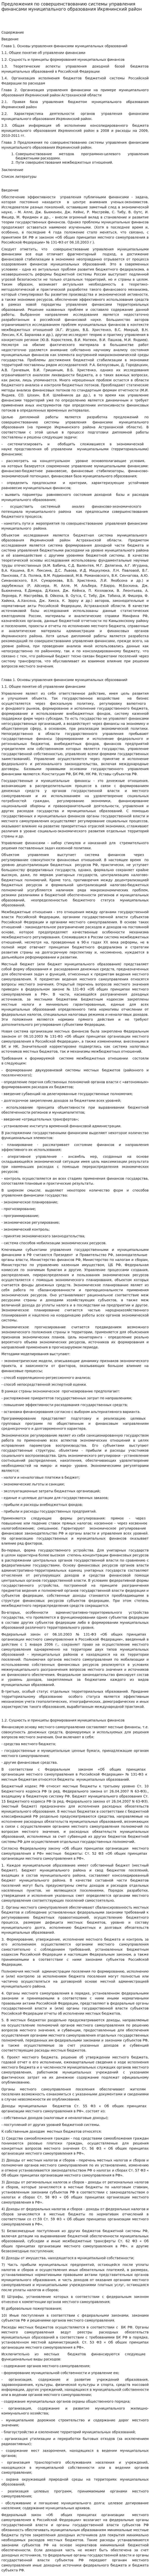 Предложения по совершенствованию системы управления финансами муниципального образования Икрянинский район